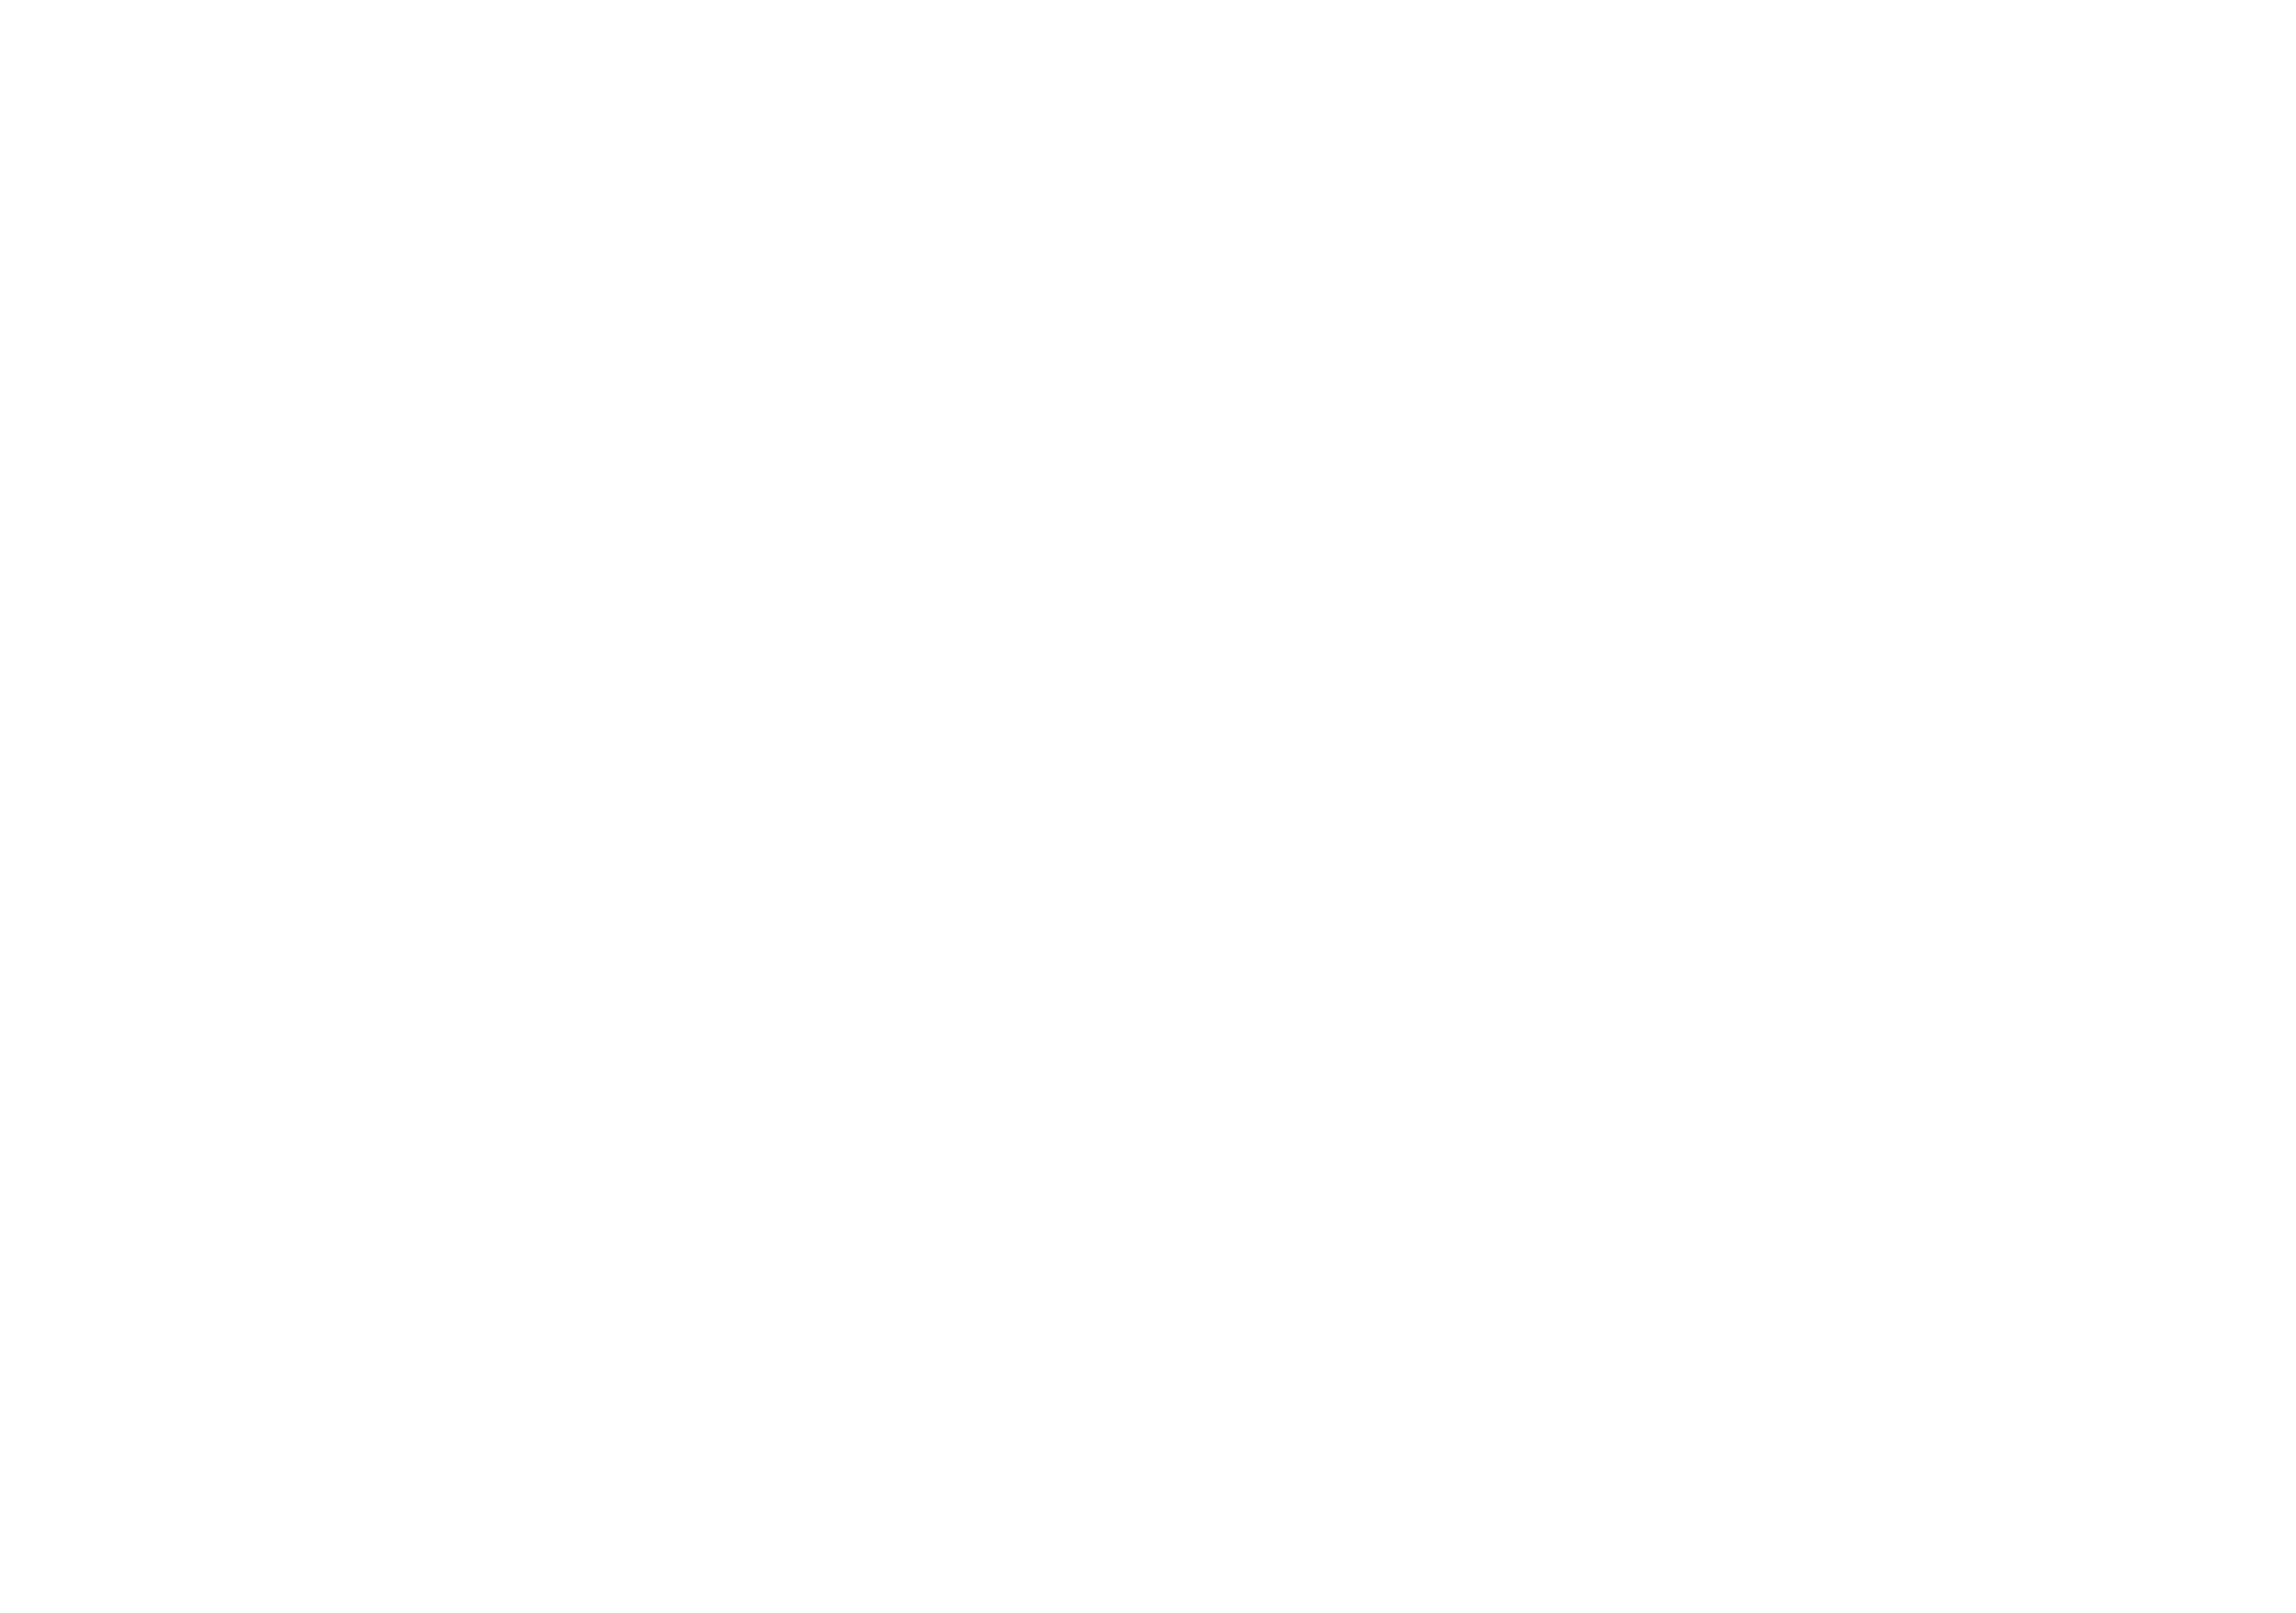 H&F BELX